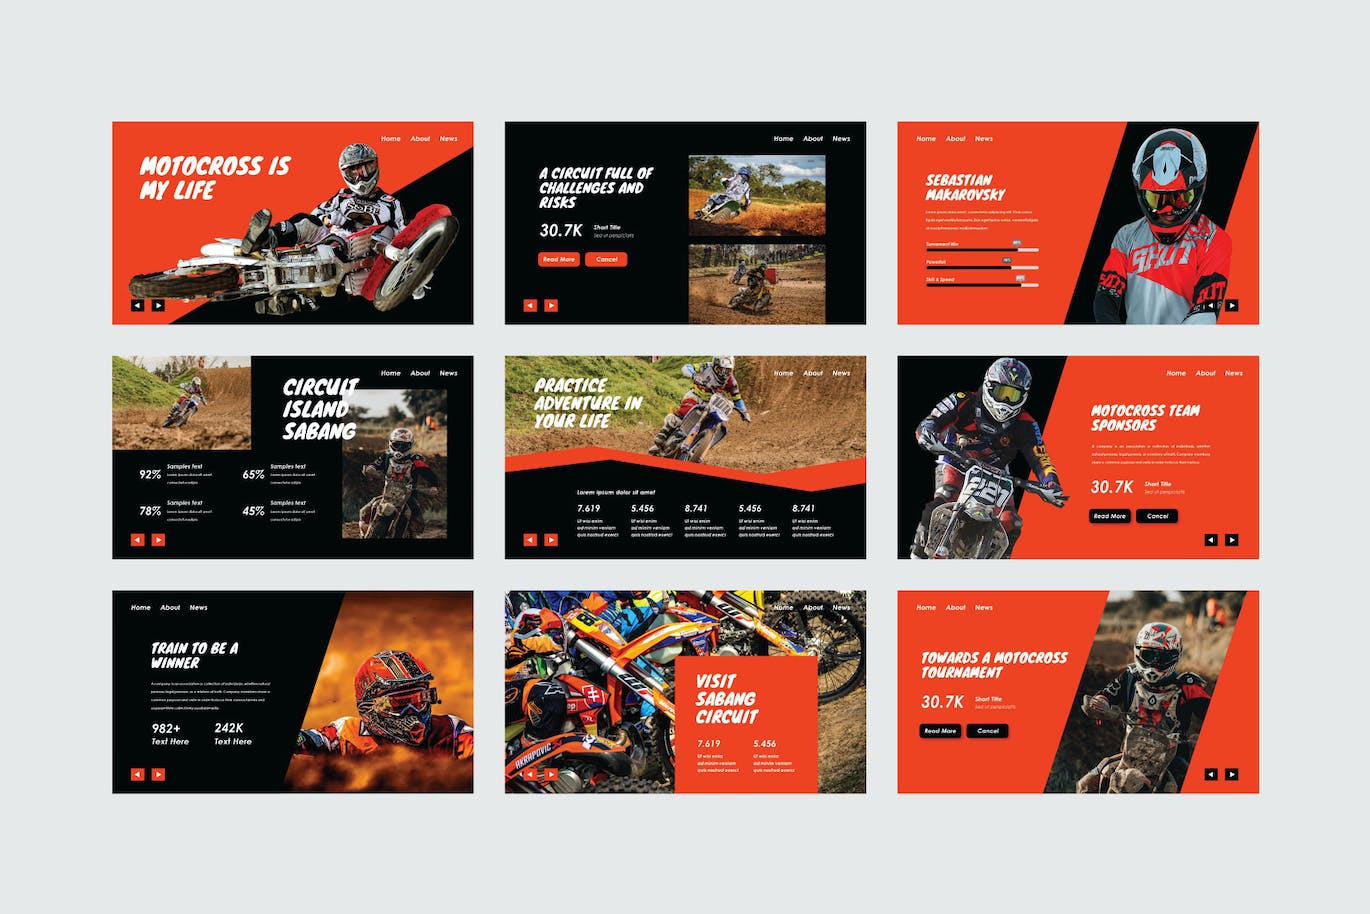 越野摩托车运动PPT创意模板 X-Trail – PowerPoint Template 幻灯图表 第7张